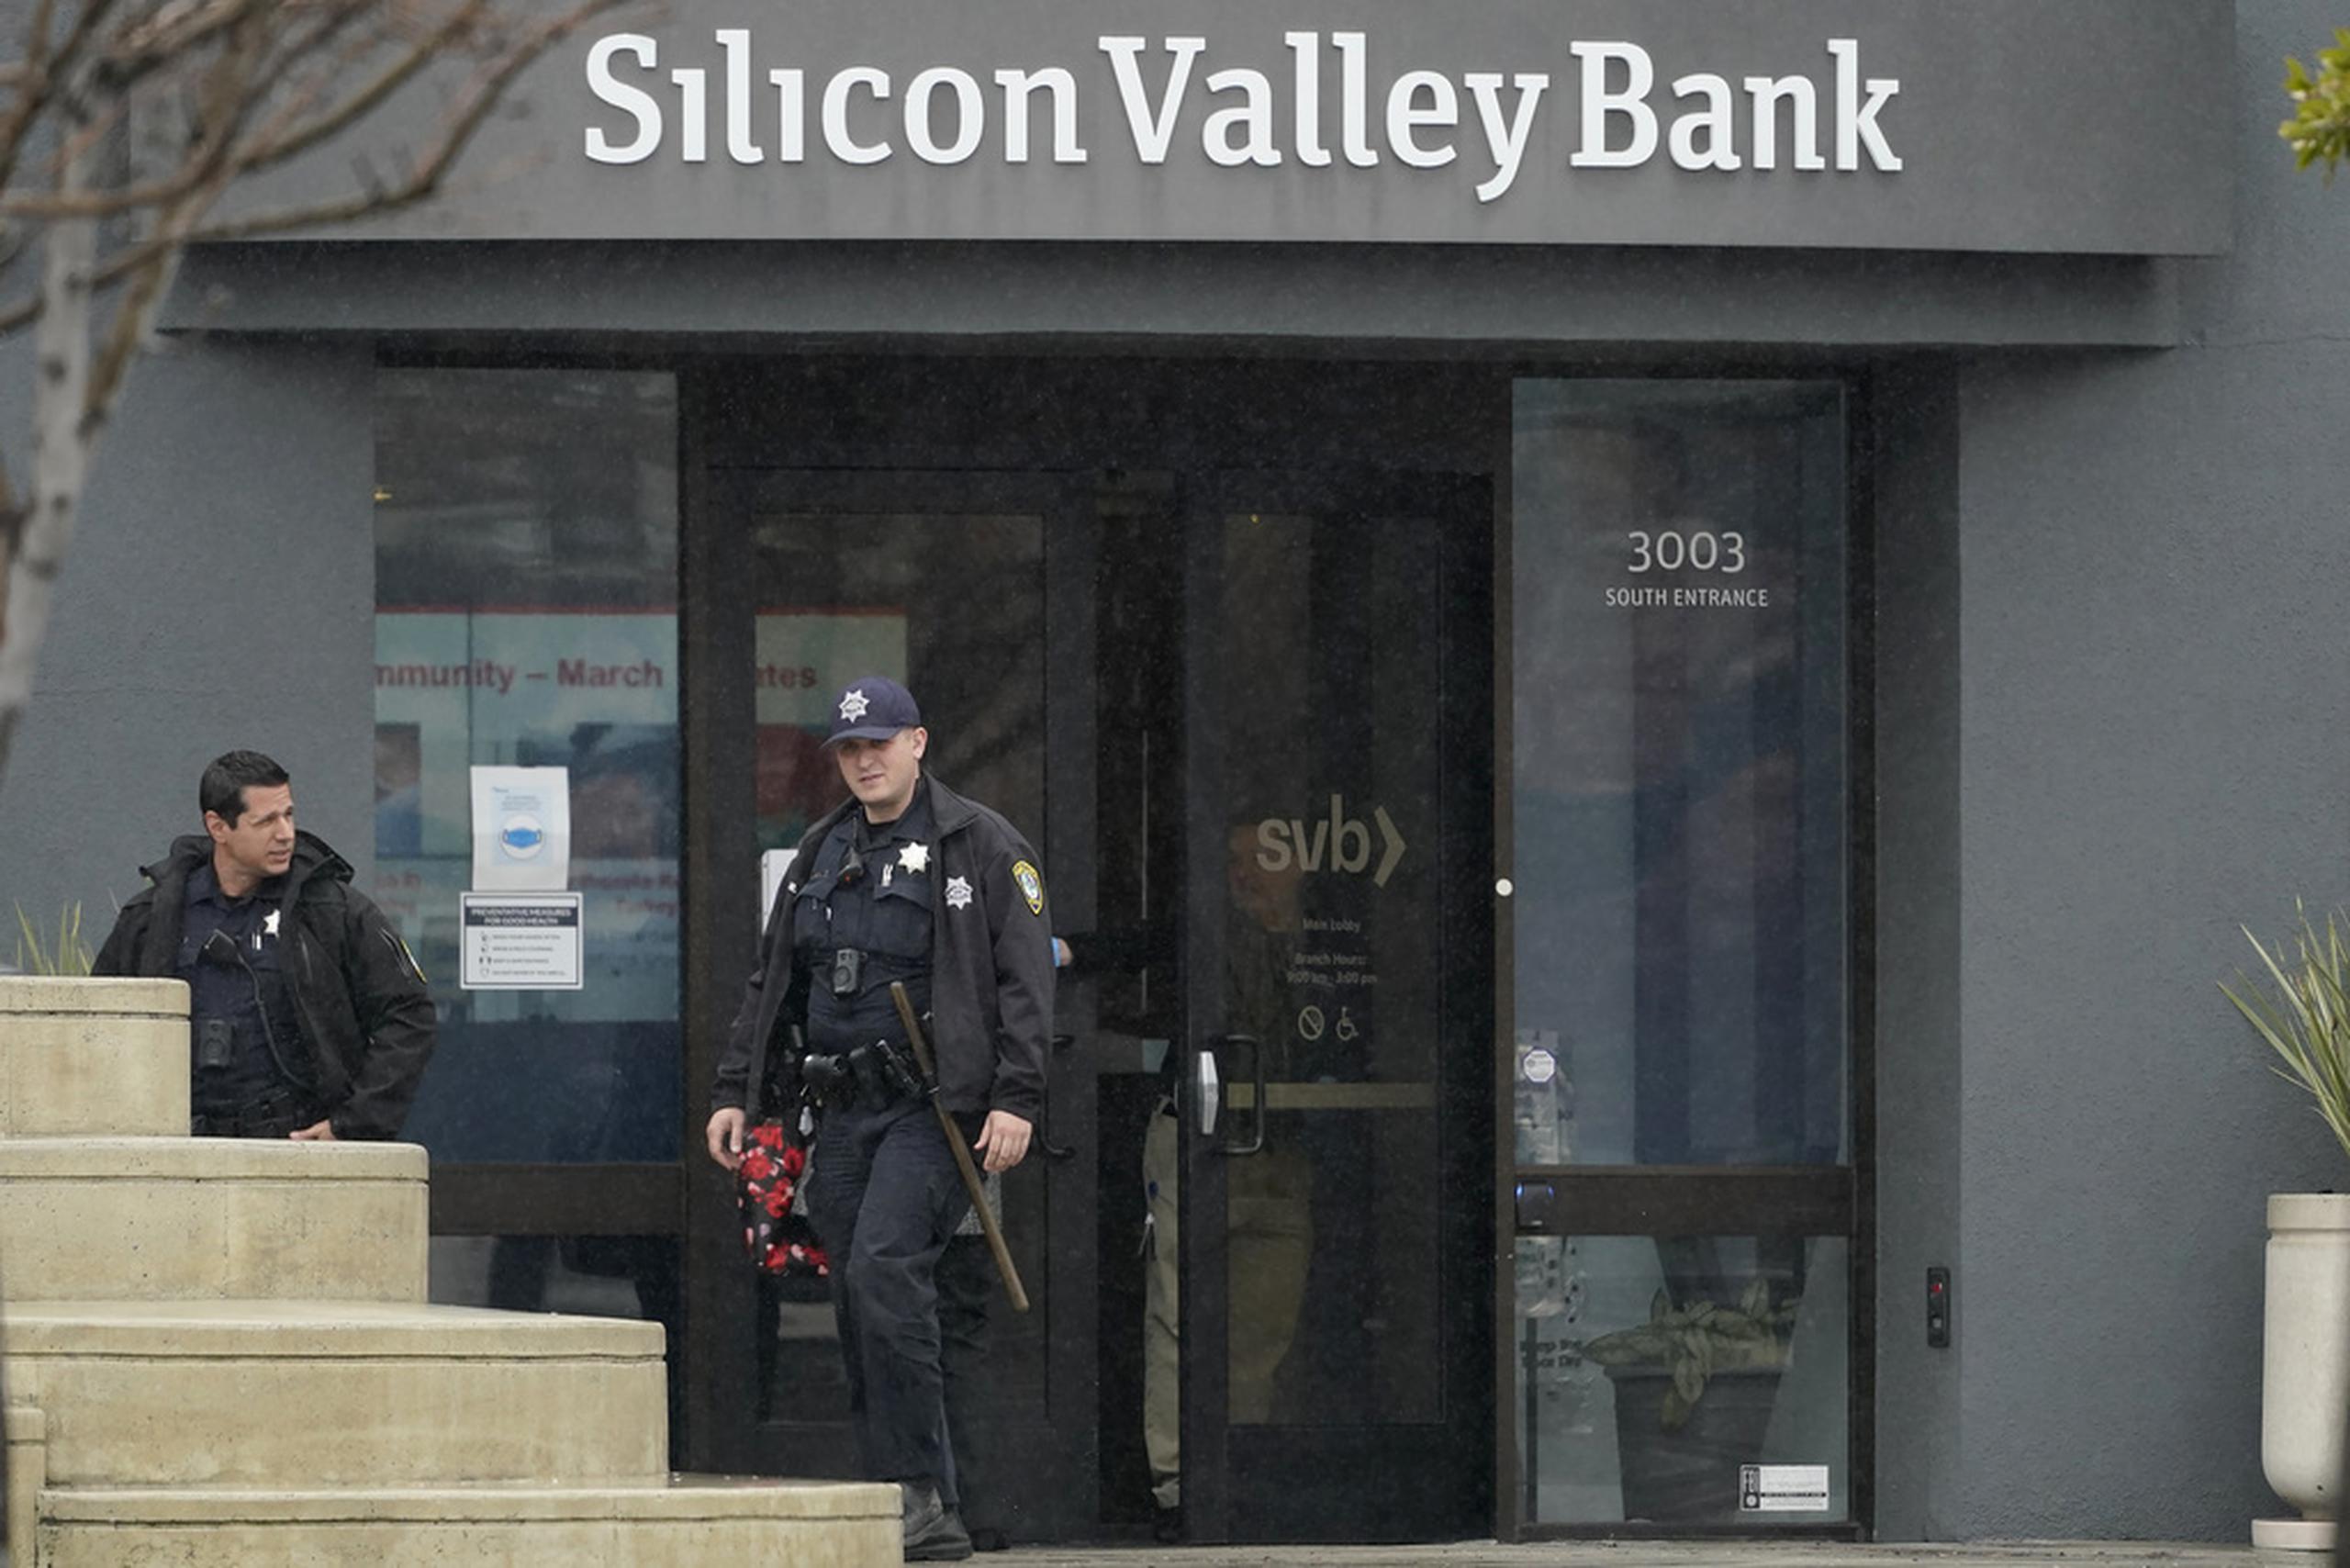 Agentes de la policía en el Silicon Valley Bank, en Santa Clara, California, el pasado viernes tras su colapso.